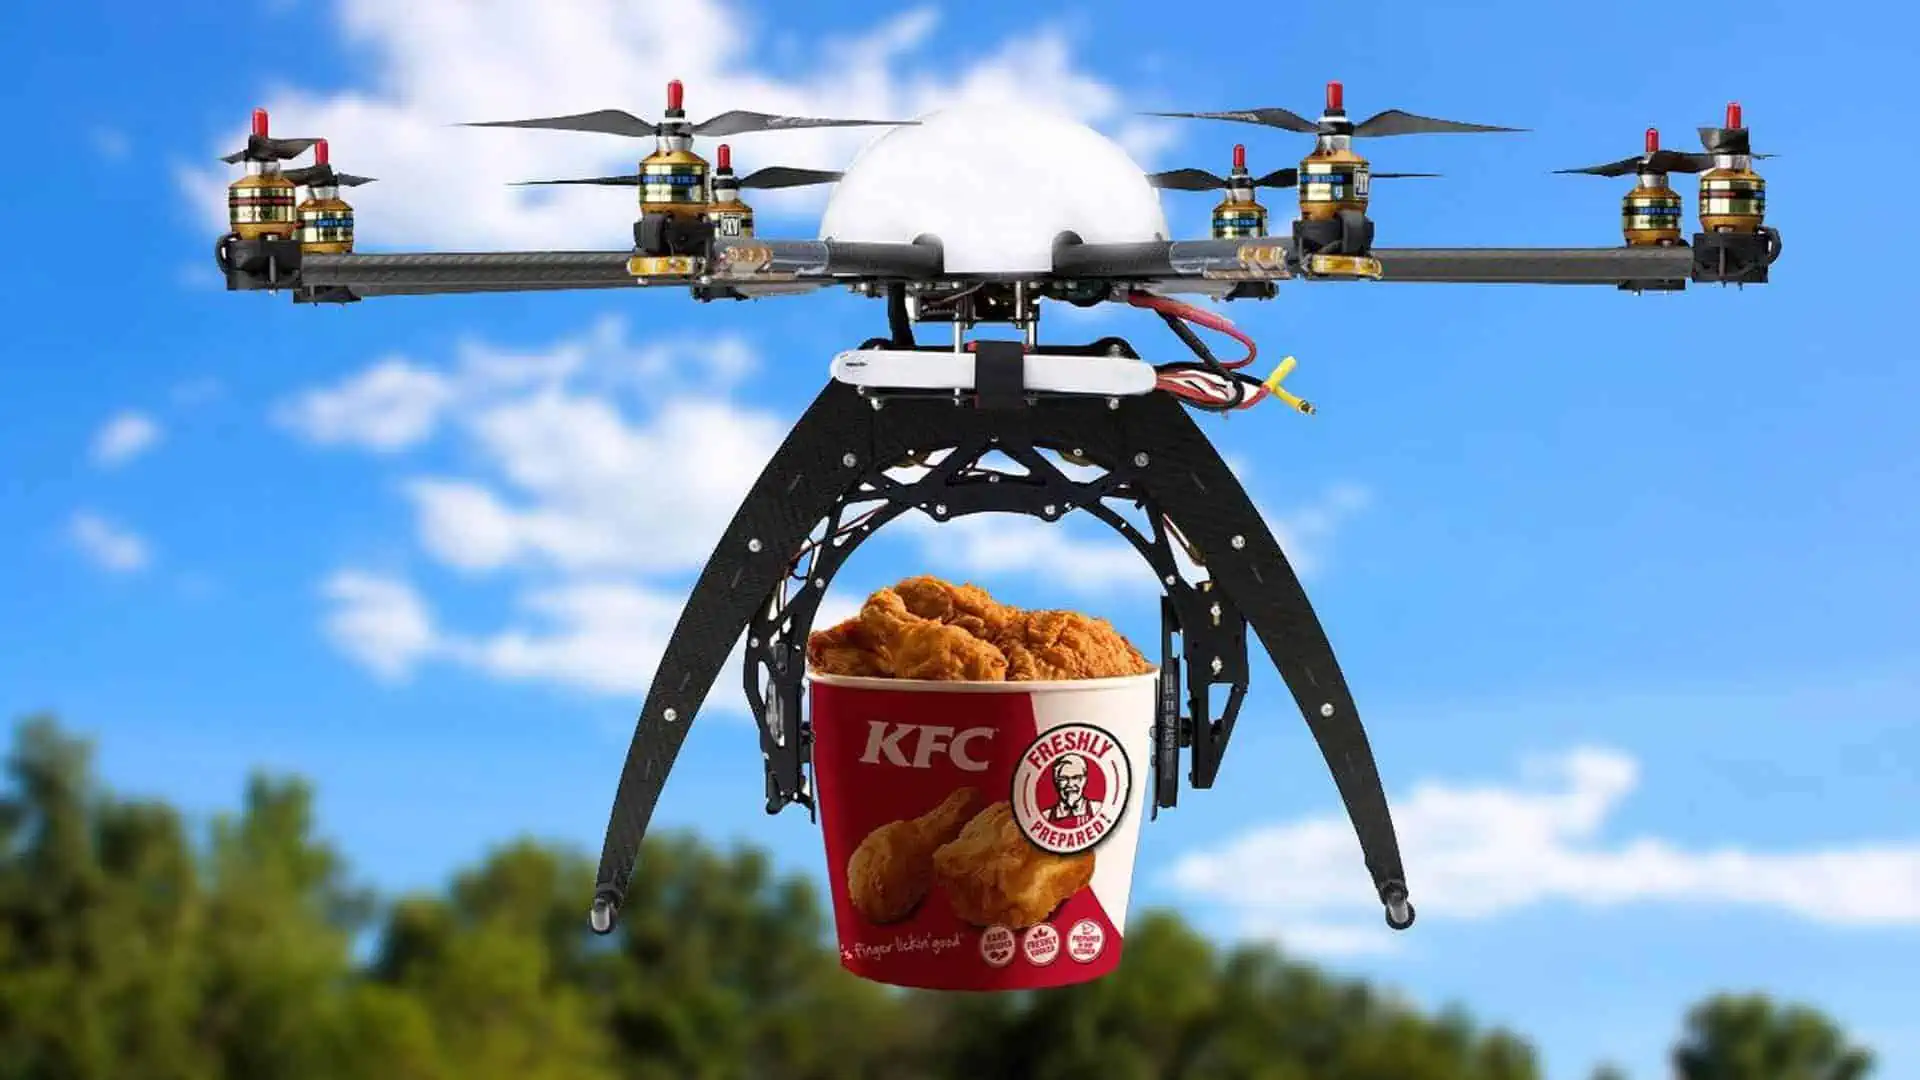 Consegne a domicilio con droni per KFC